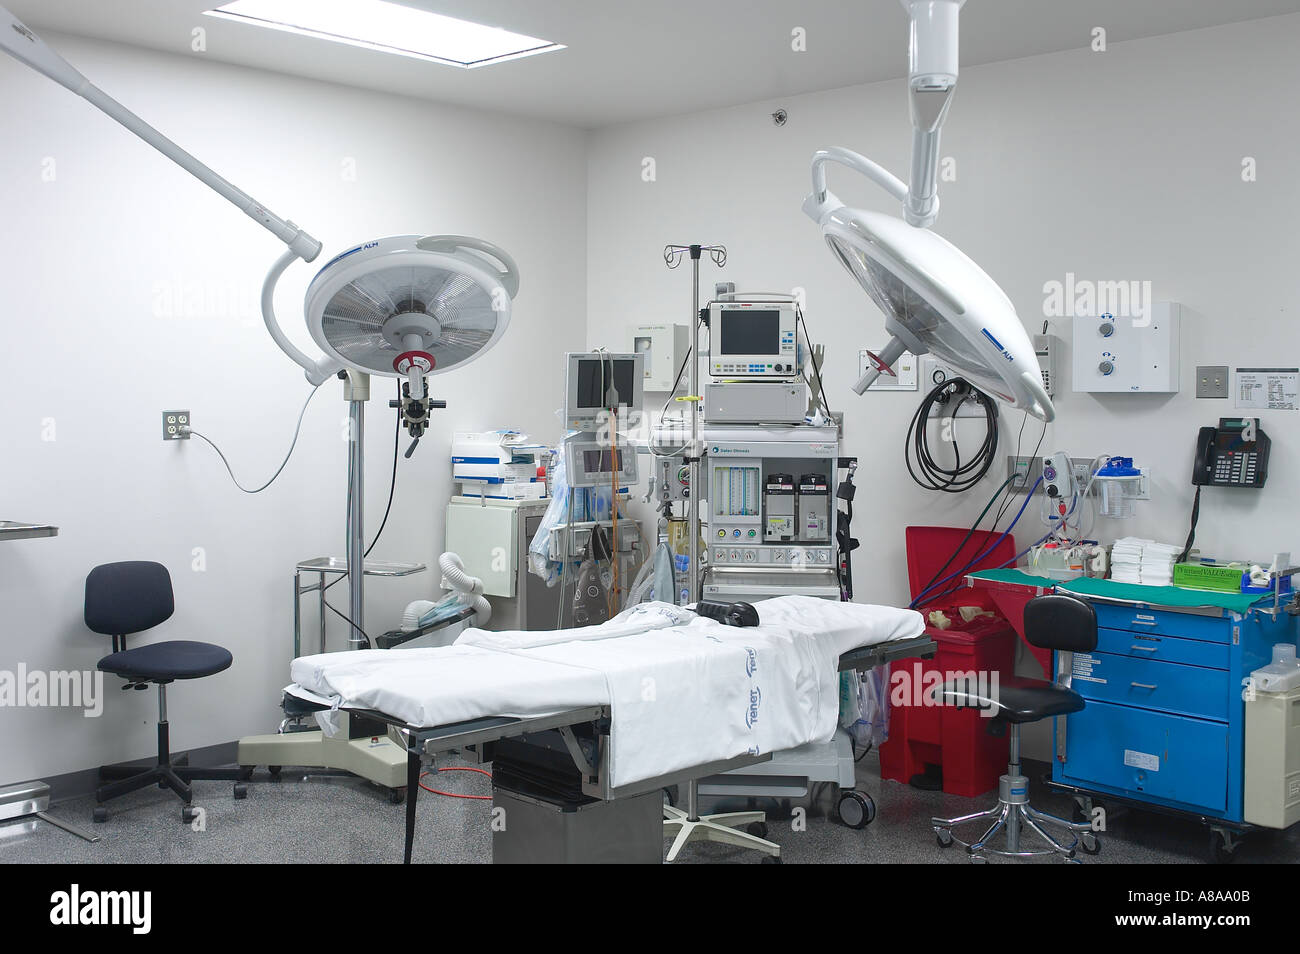 Chirurgie chirurgische OP im Krankenhaus, Philadelphia USA Stockfoto